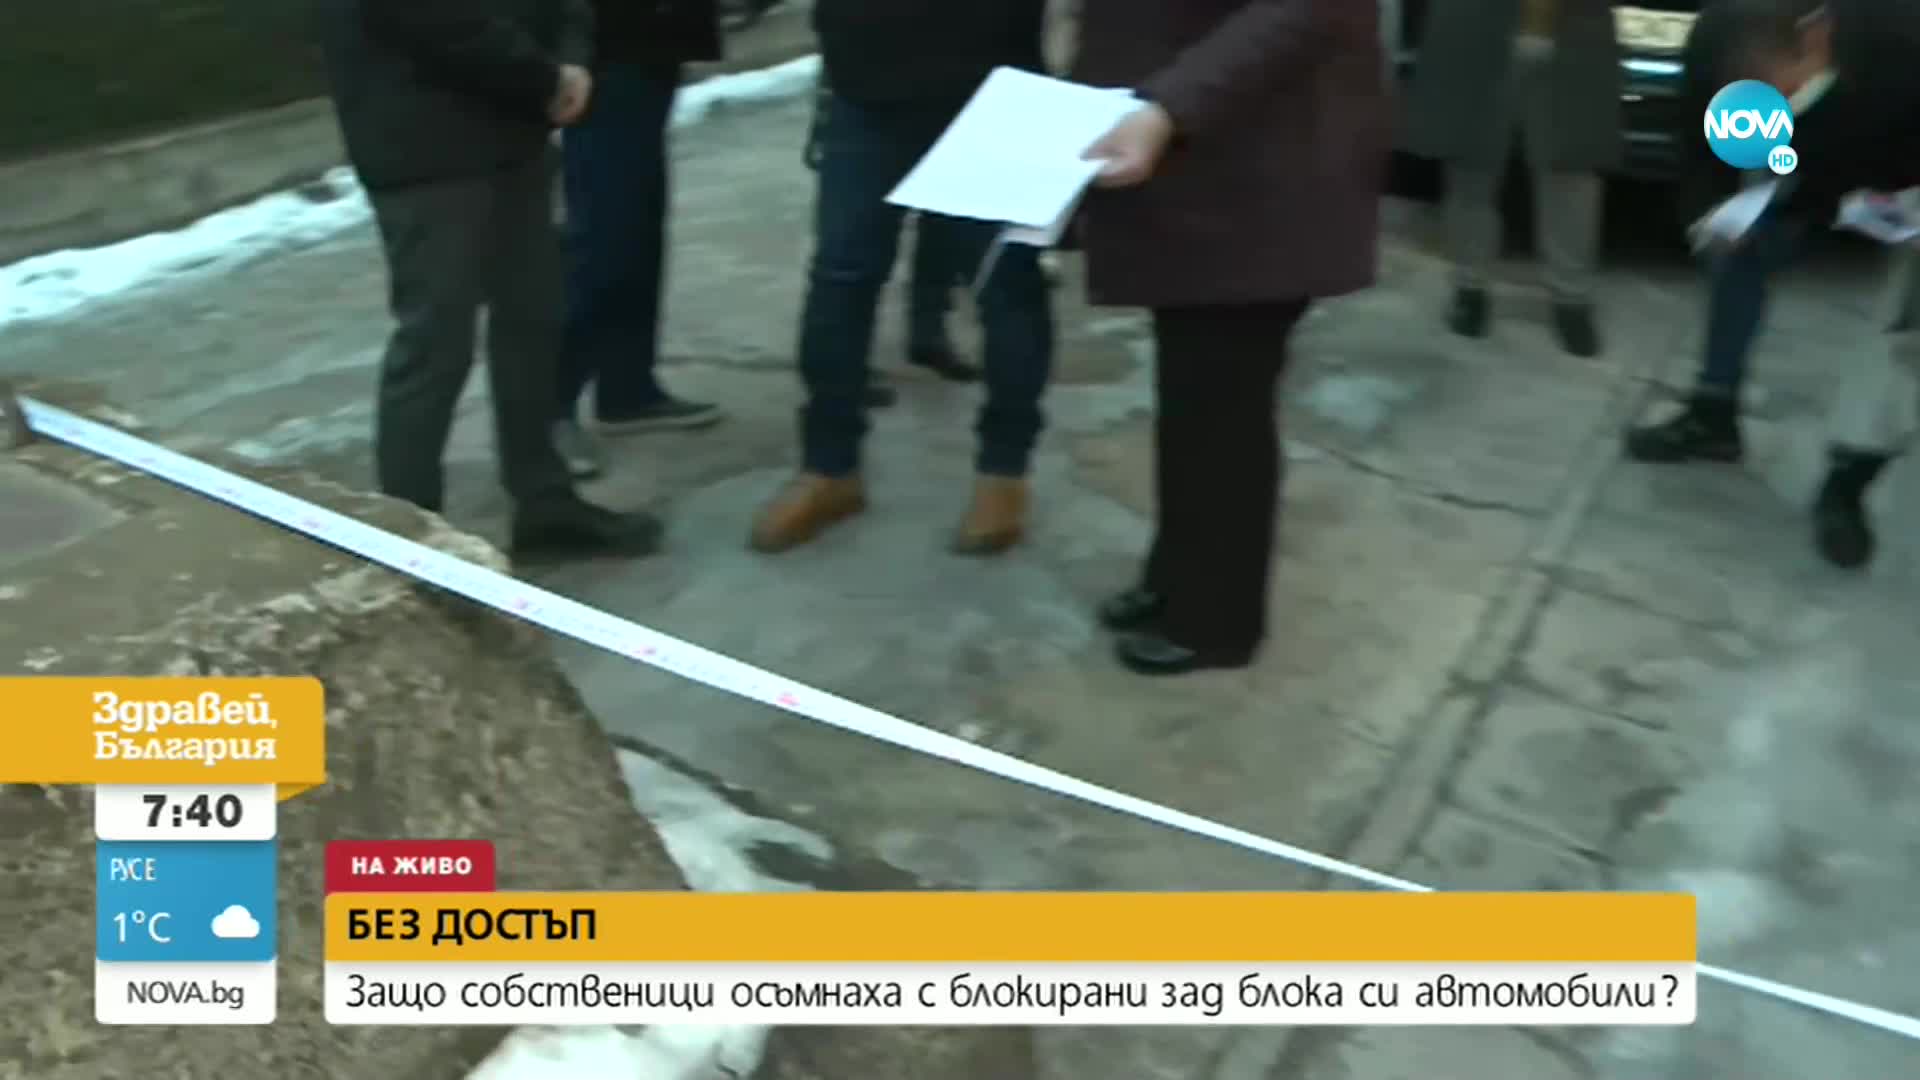 Спор за имот блокира гаражи и паркоместа в София